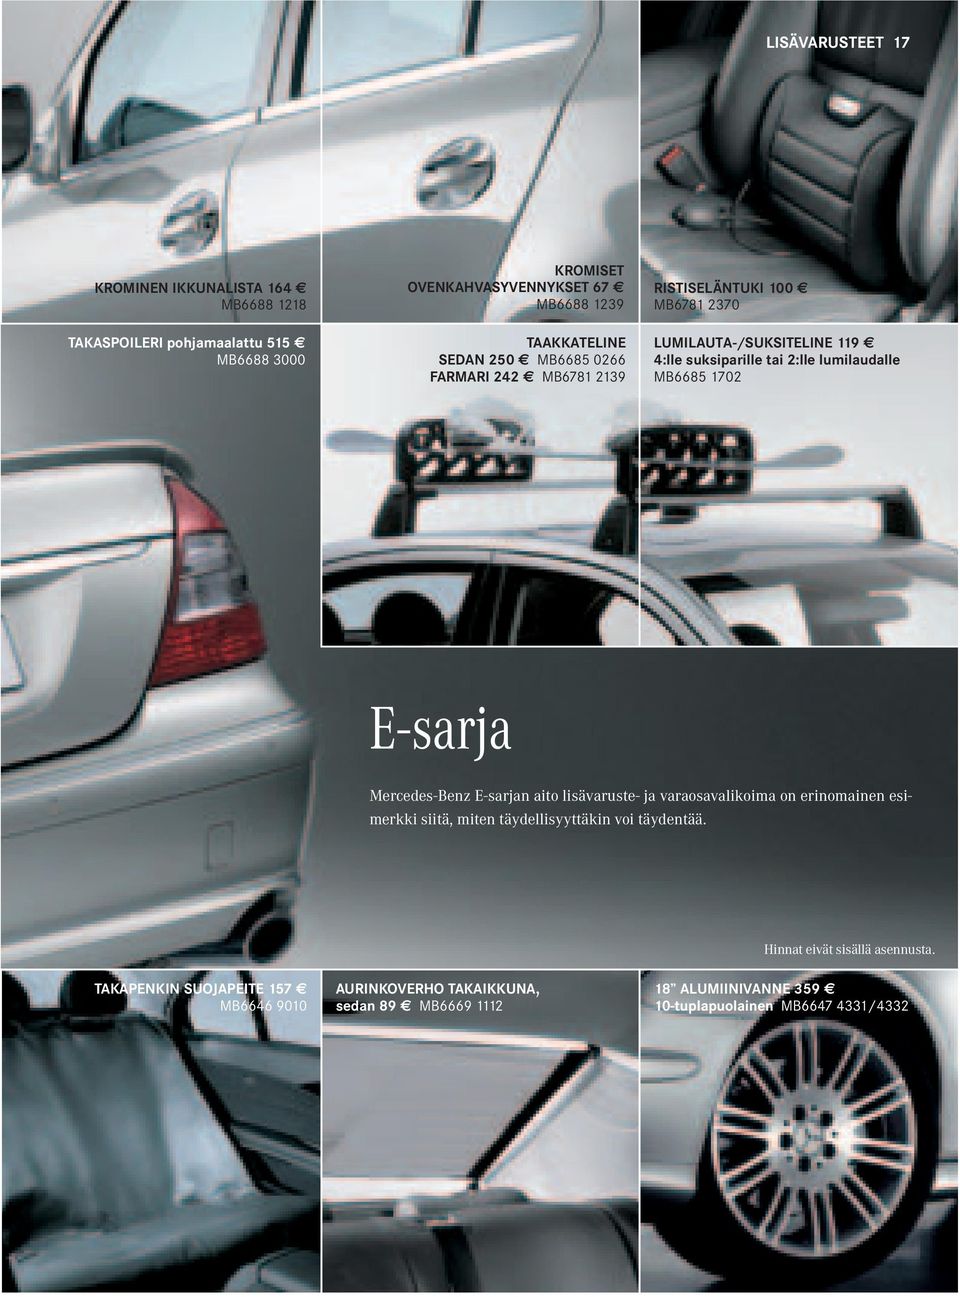 1702 E-sarja Mercedes-Benz E-sarjan aito lisävaruste- ja varaosavalikoima on erinomainen esimerkki siitä, miten täydellisyyttäkin voi täydentää.